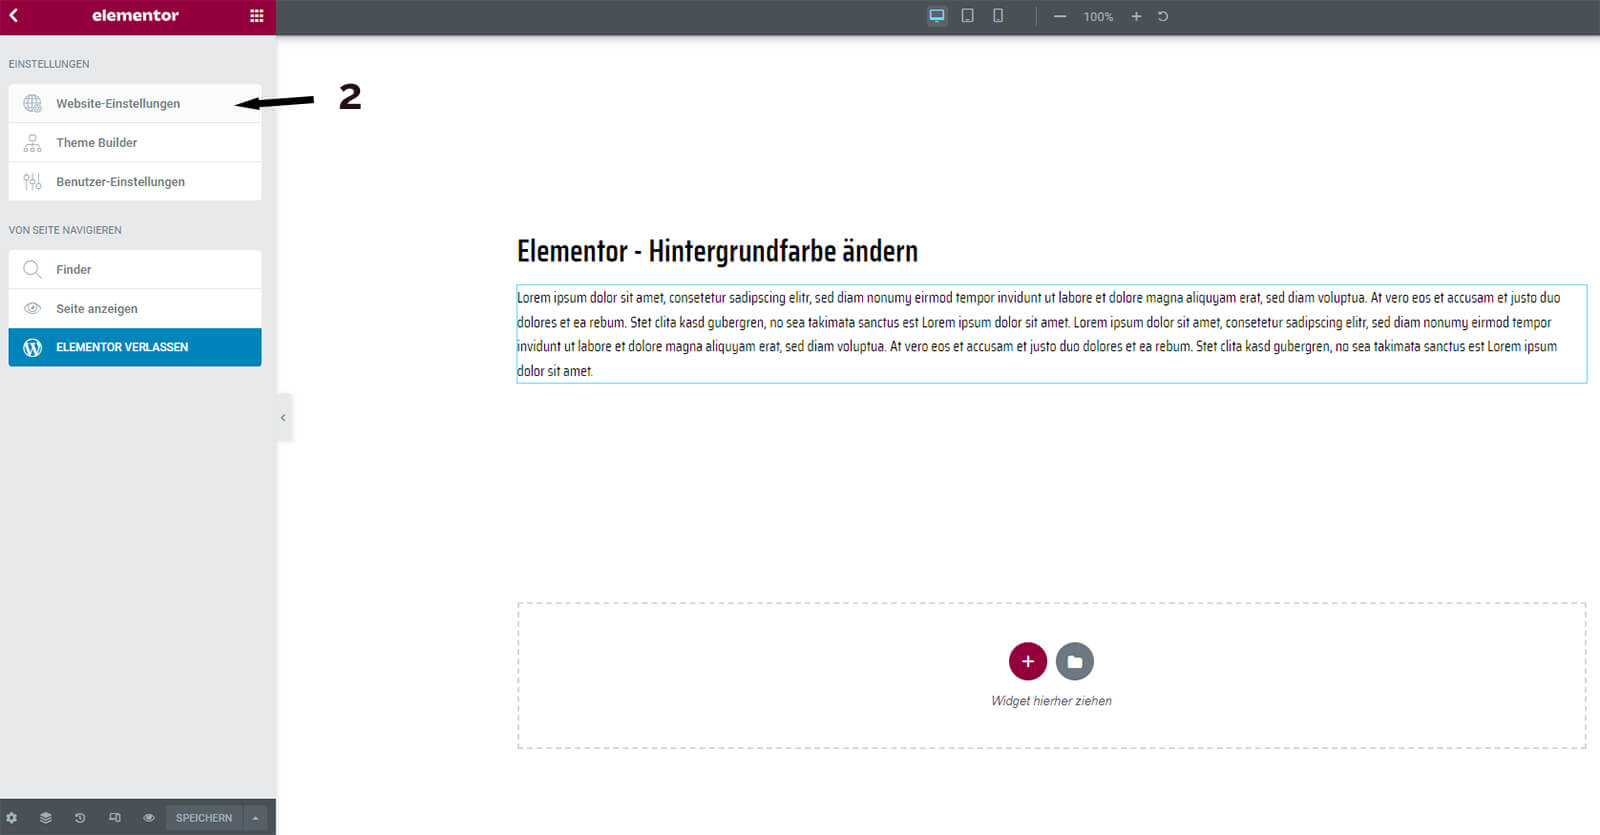 Elementor - Hintergrundfarbe ändern in den Website Einstellungen - Schritt 2